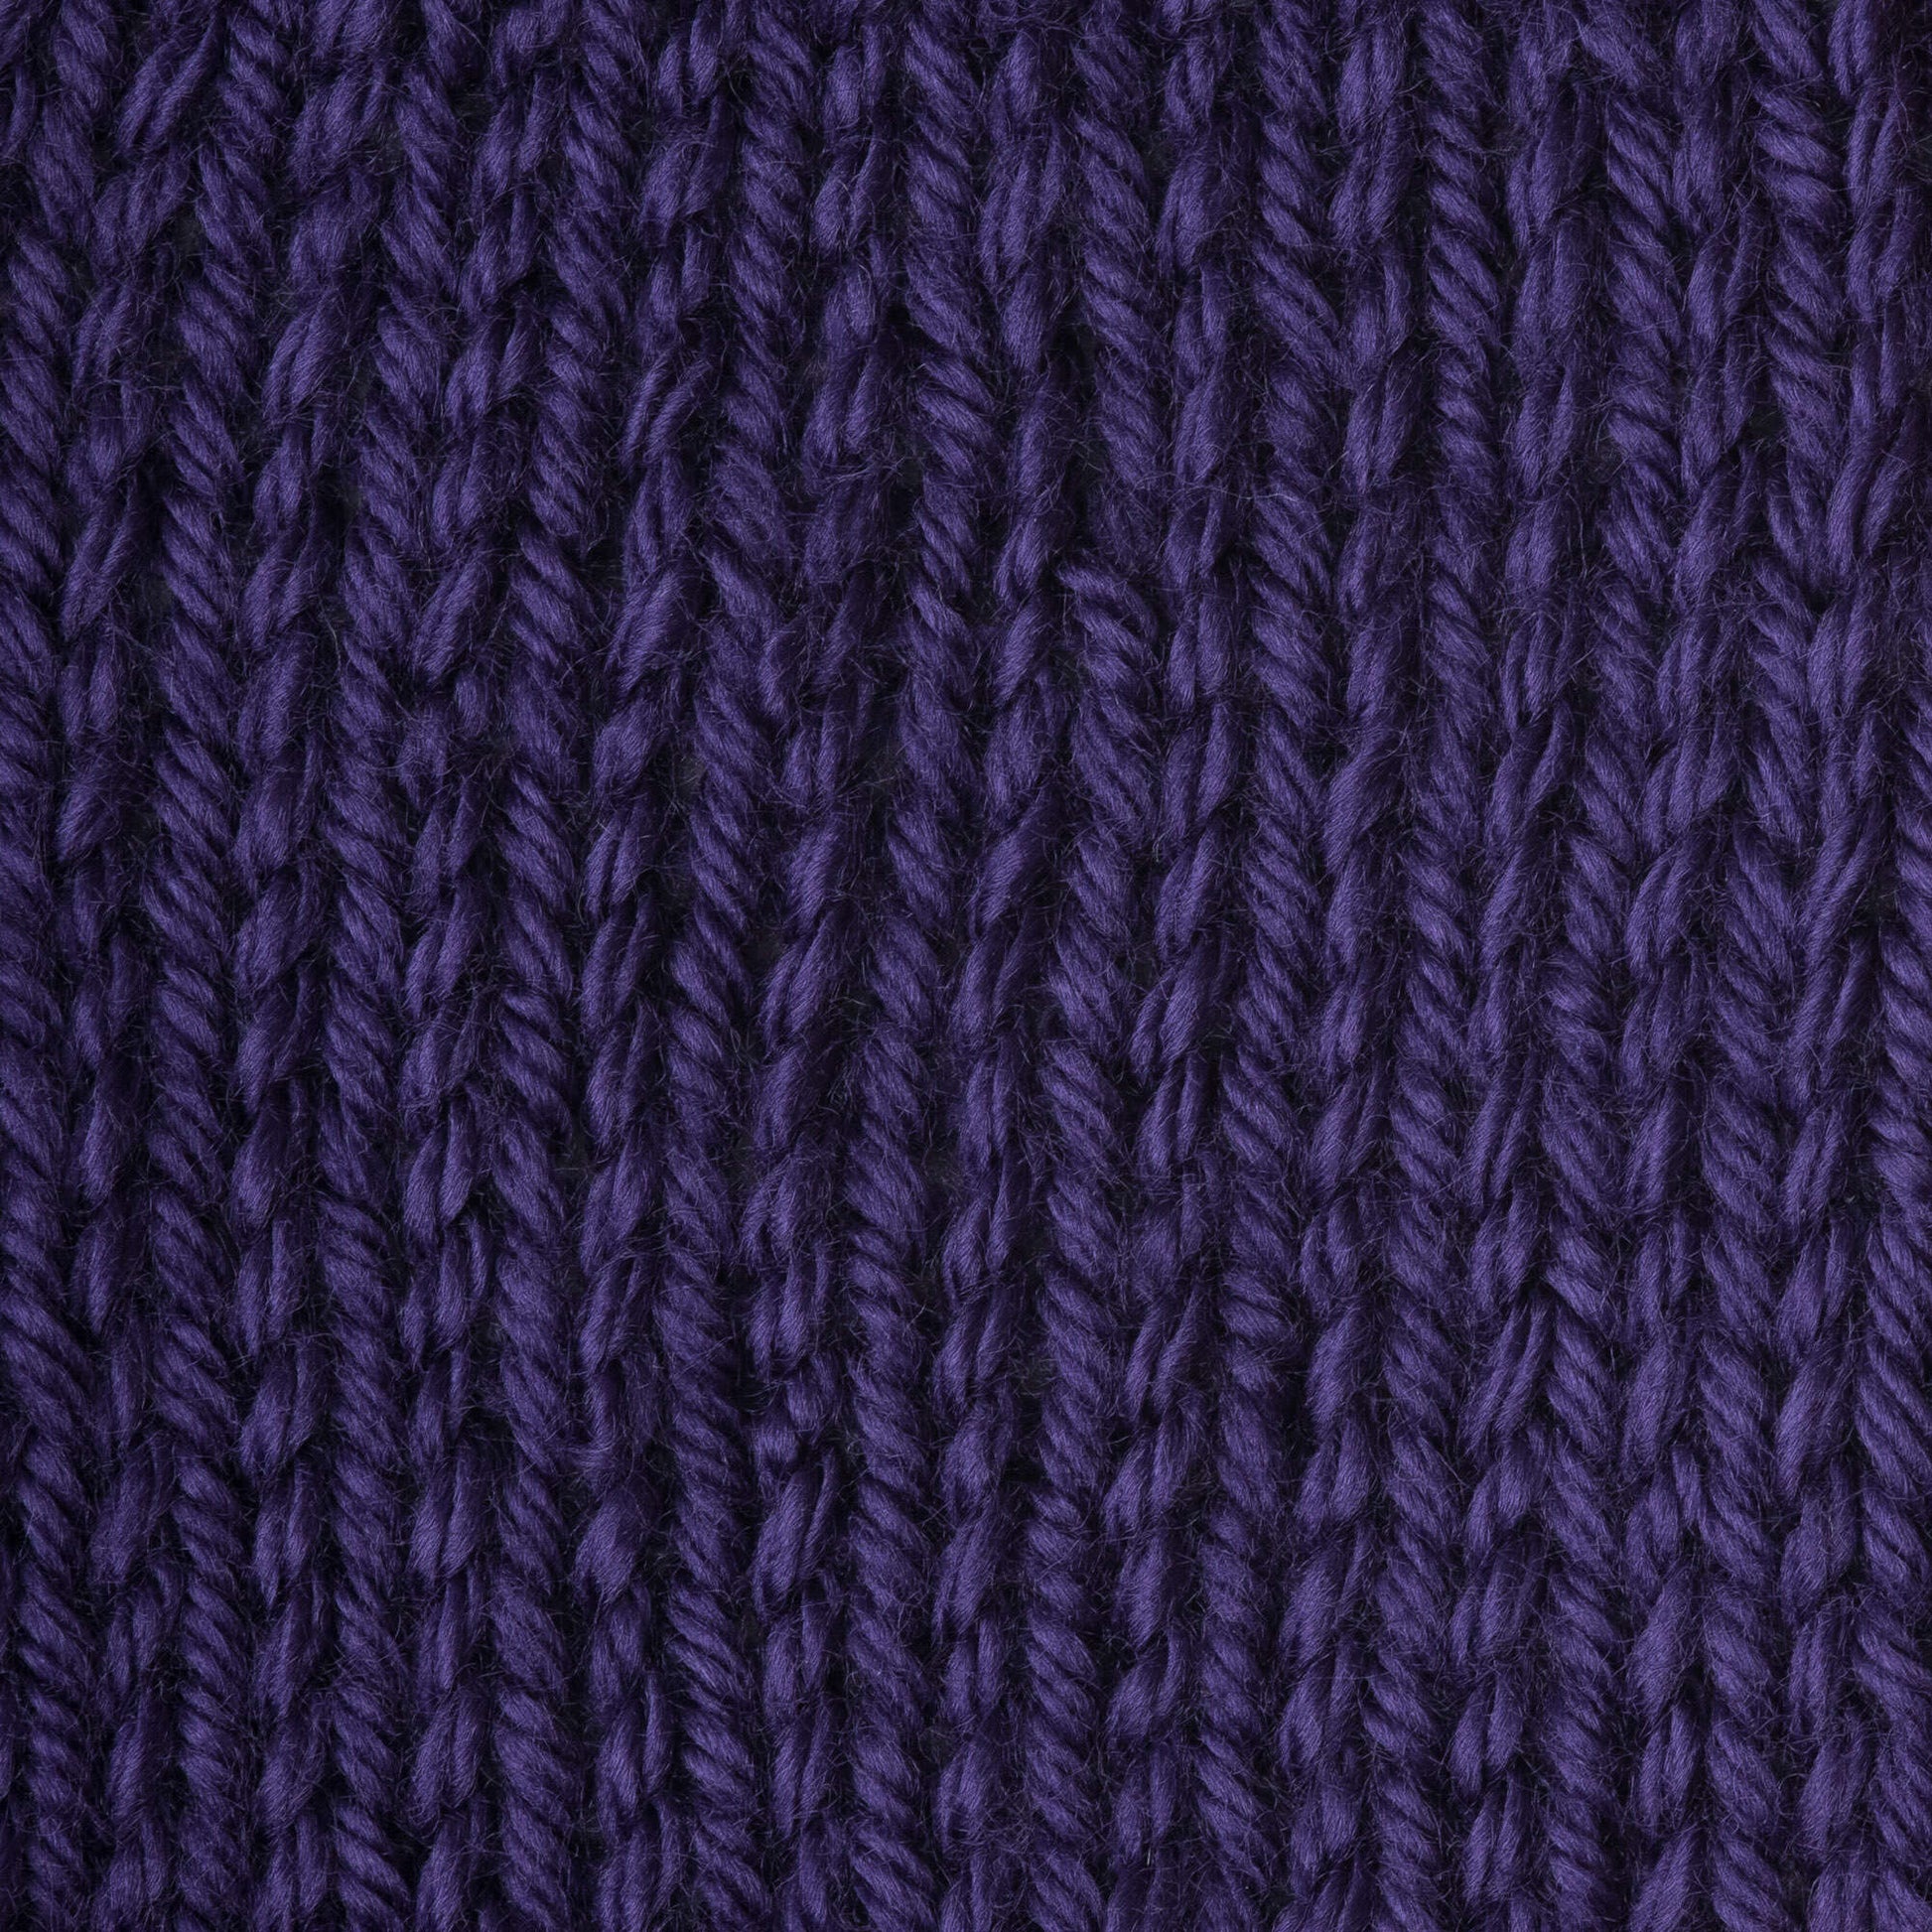 Caron 6oz Medium Weight Acrylic Simply Soft Freckles Stripe Yarn by Caron